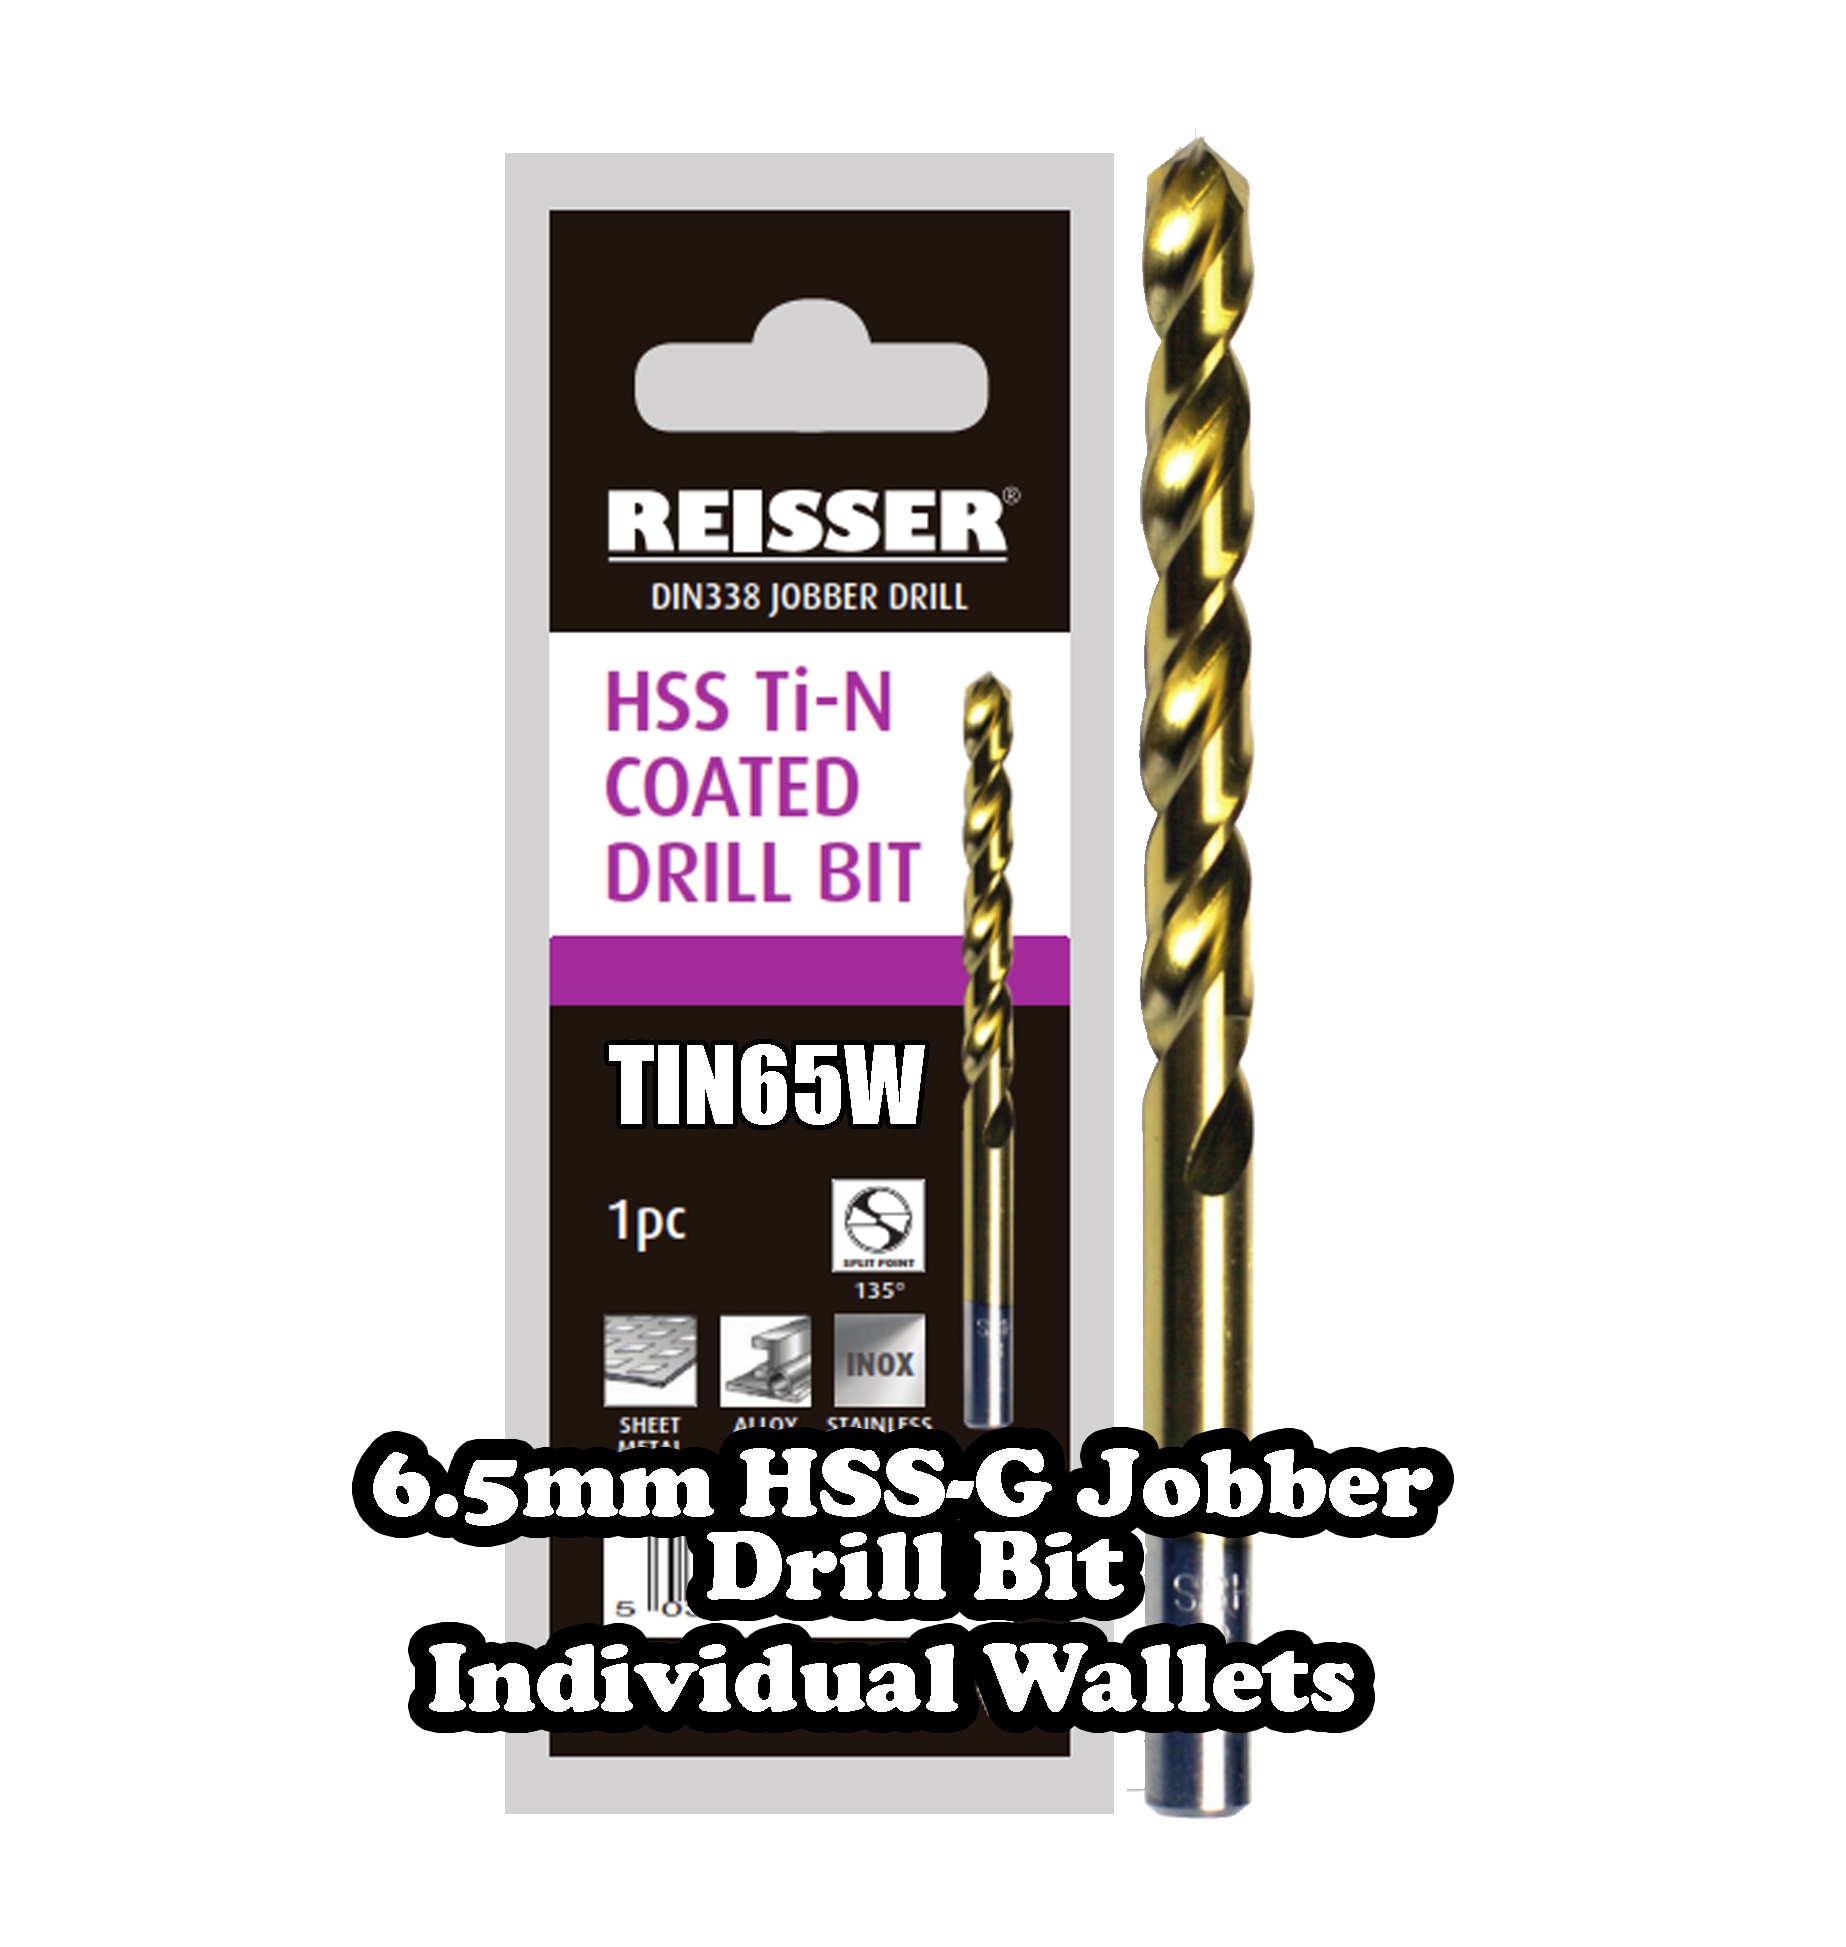 6.5mm HSS Jobber Drill Bit (SINGLE WALLET)